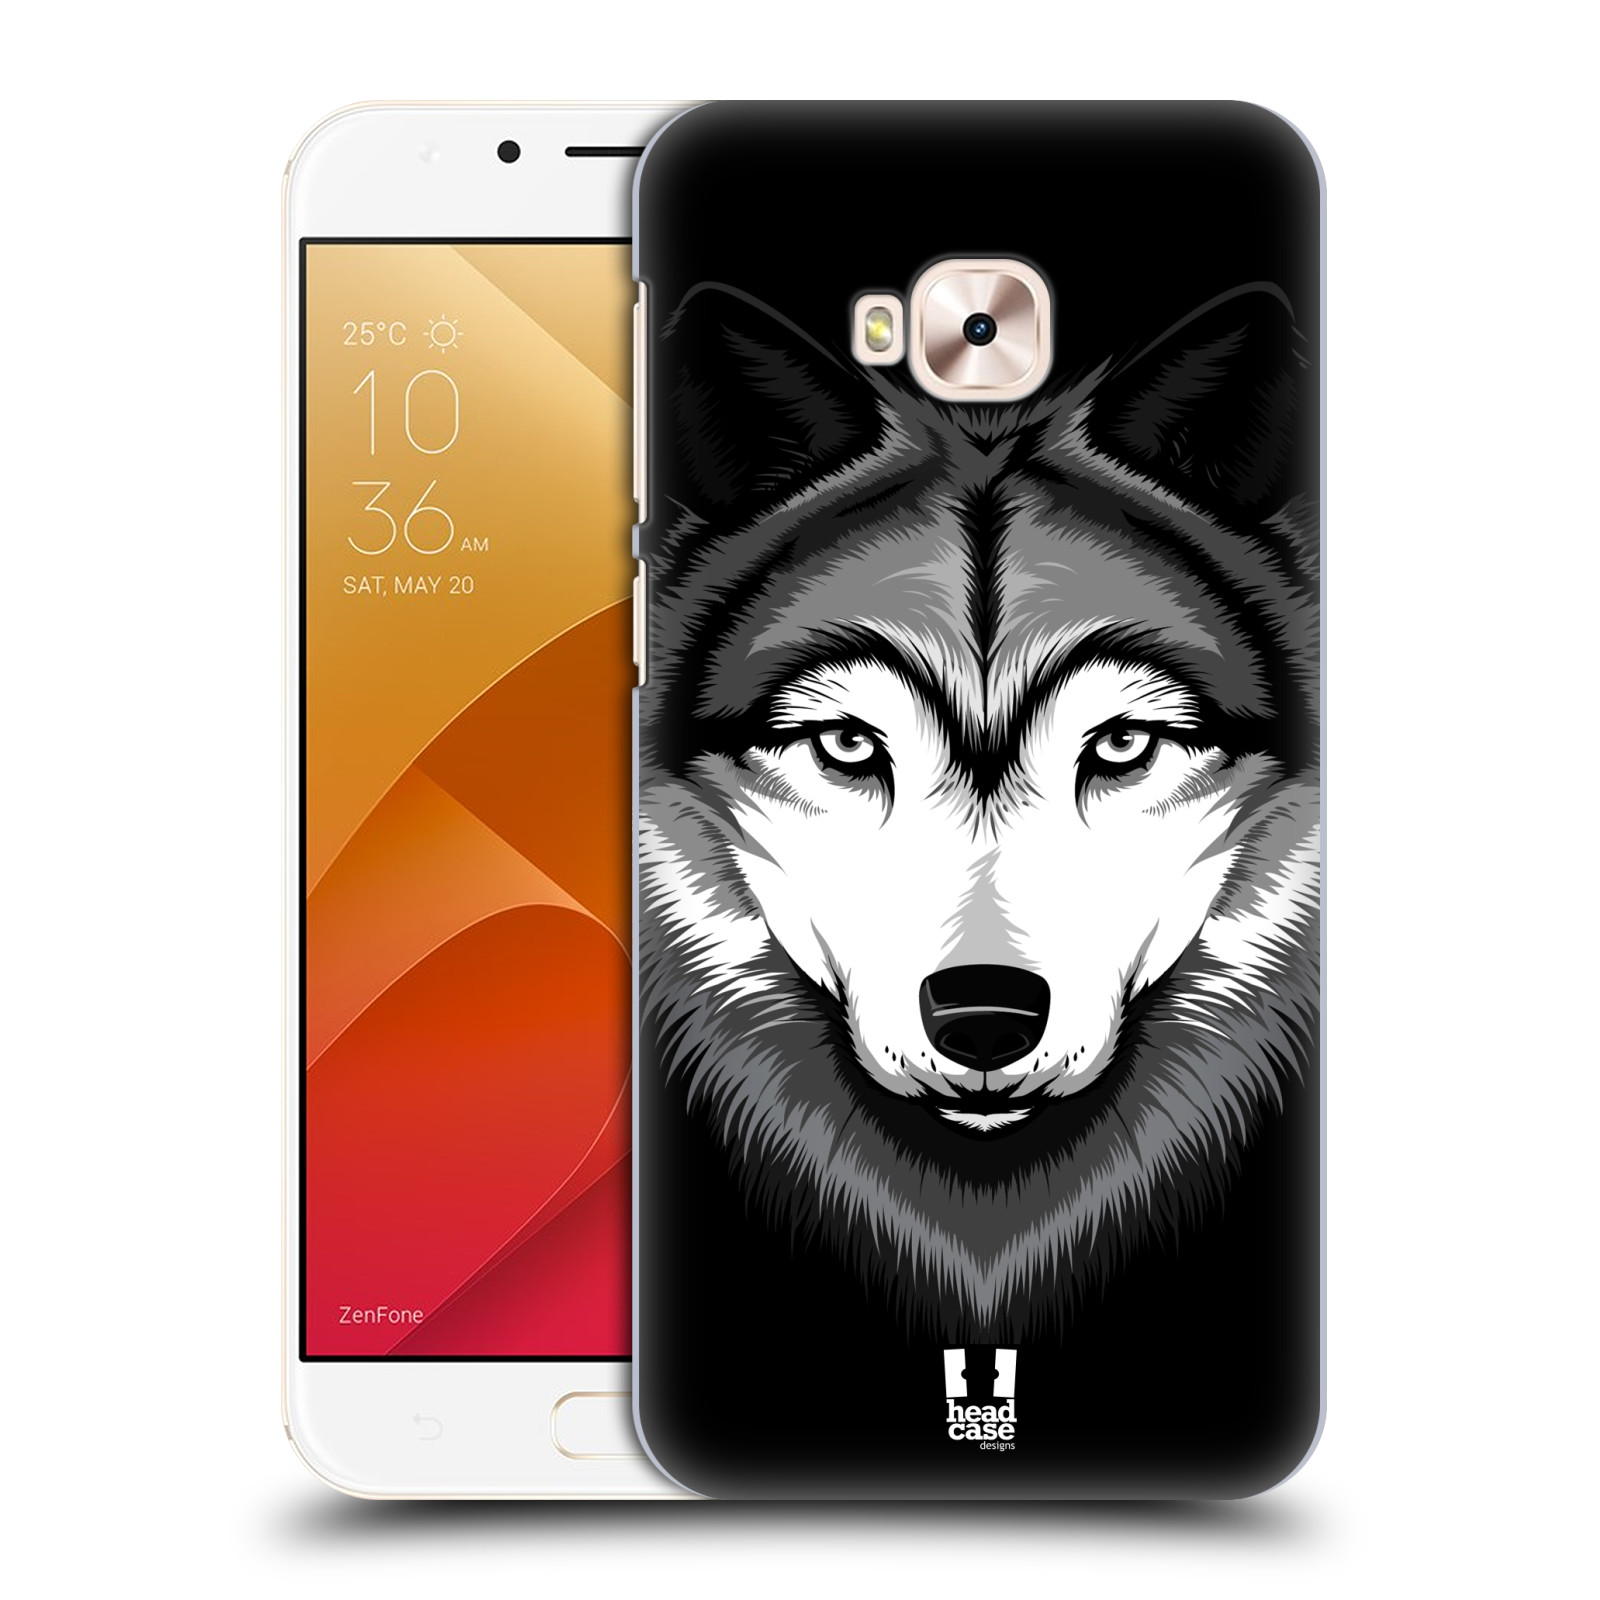 HEAD CASE plastový obal na mobil Asus Zenfone 4 Selfie Pro ZD552KL vzor Zvíře kreslená tvář 2 vlk